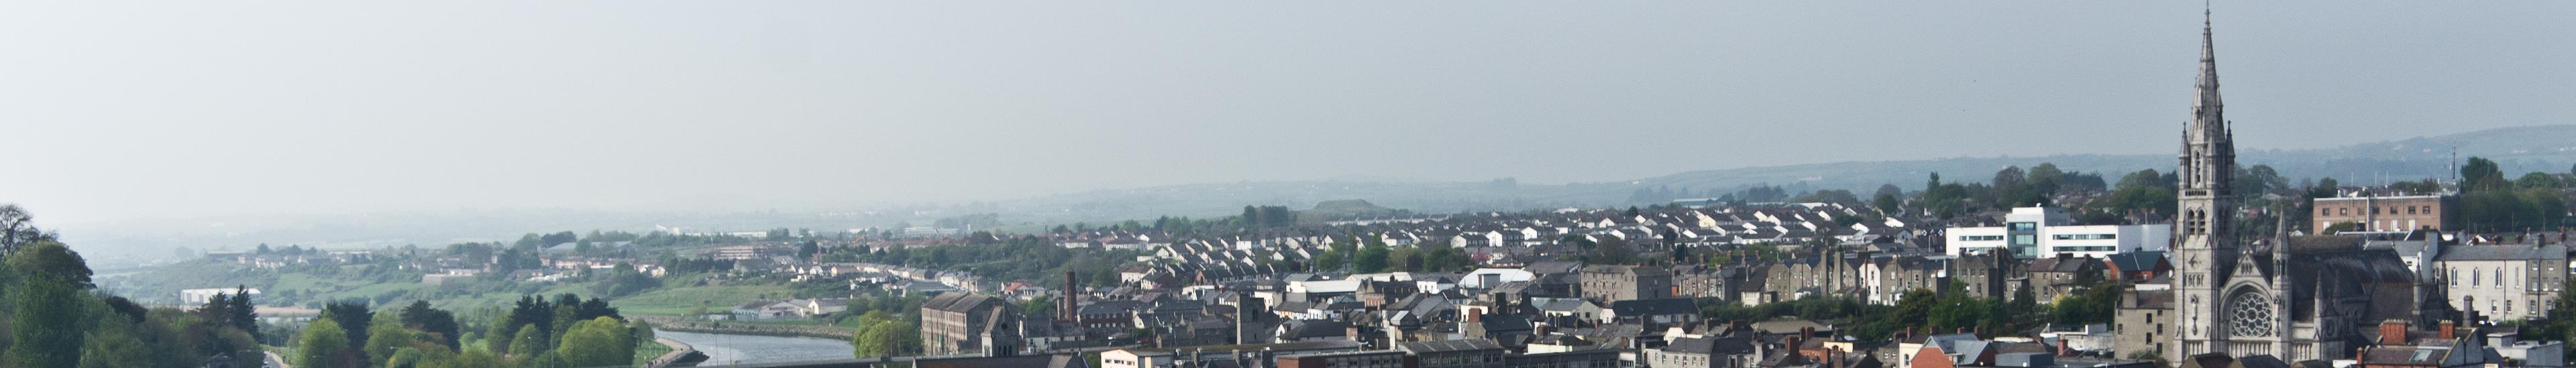 Banner image for Drogheda on GigsGuide